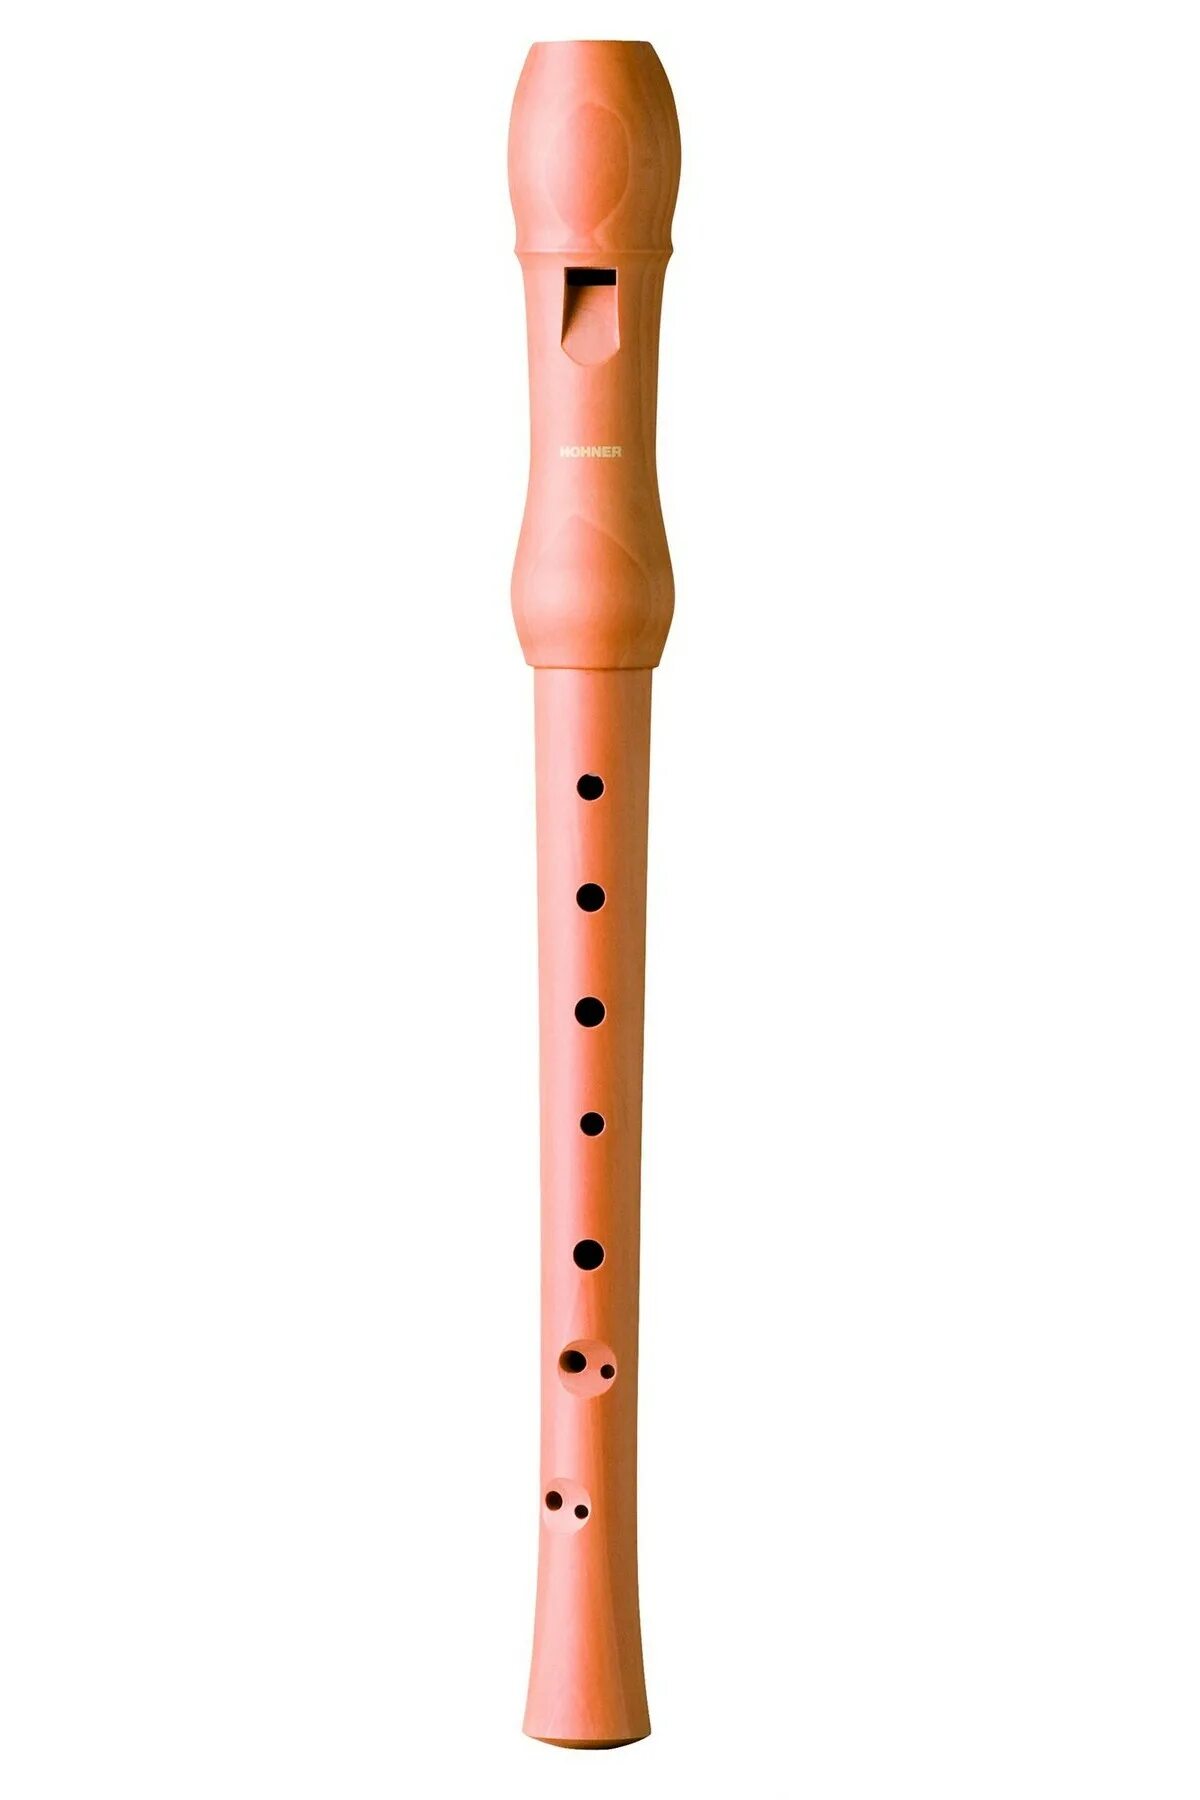 Просто флейта. Блокфлейта Hohner b9533. Блокфлейта Hohner b9532. Блокфлейта немецкая система или барочная. Польская пластмасса флейта pl3432.